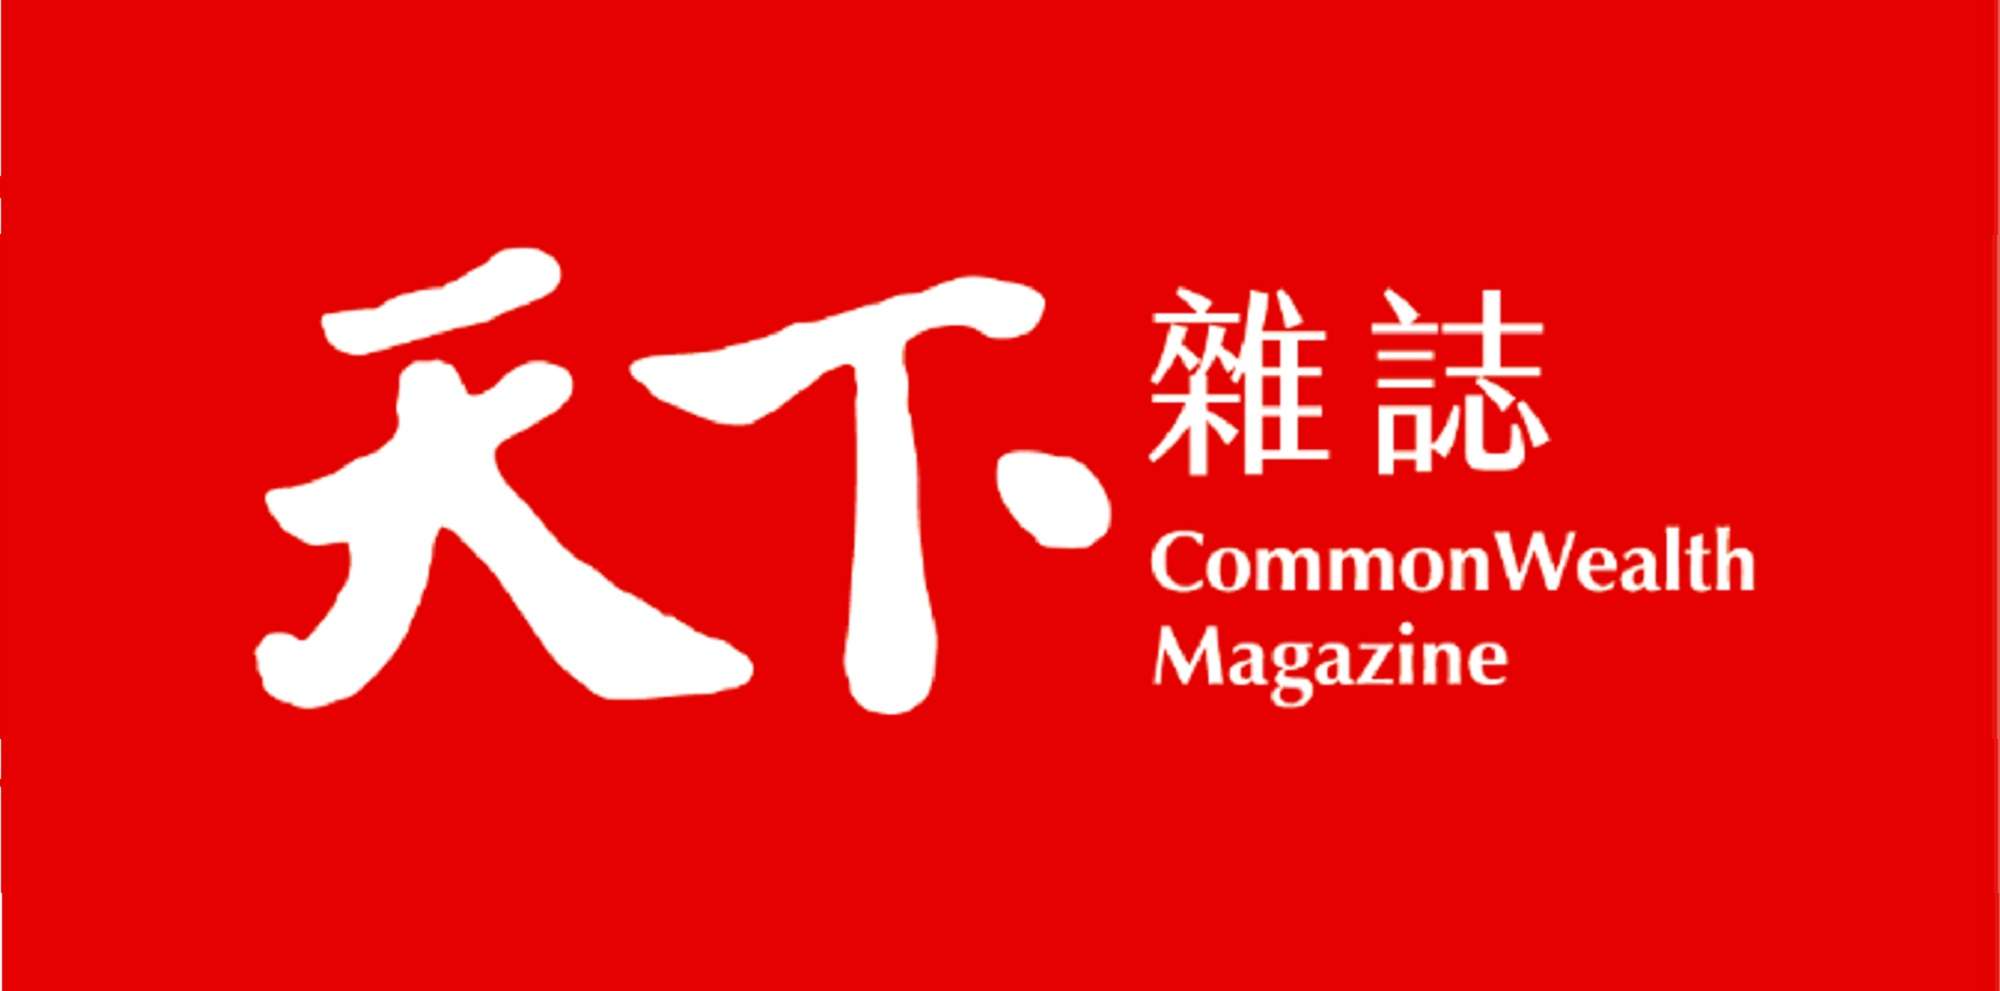 Common Wealth Magazine logo.